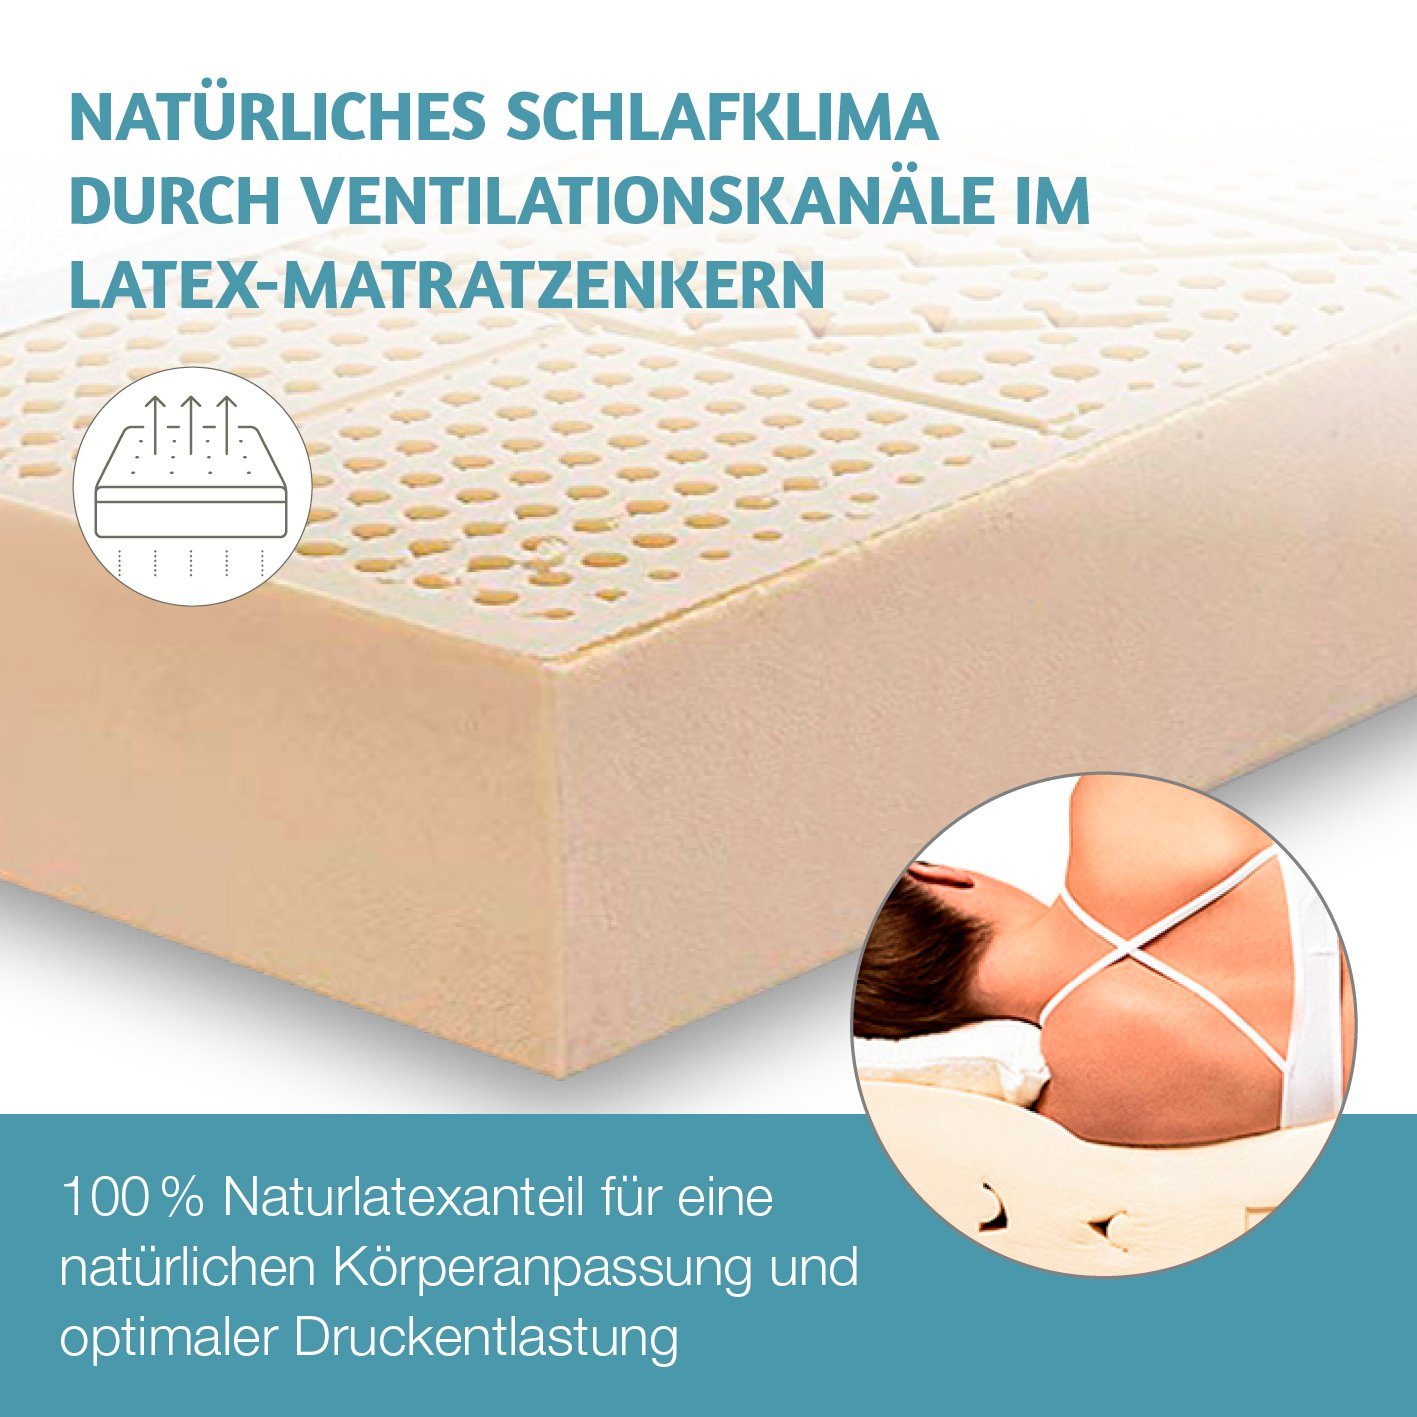 H Matratzen, (RG 2 80x200 cm Härtegrad 100), (Ergo mit RAVENSBERGER Dunlop-Verfahren 70) Premium Baumwoll-Doppeltuch-Bezug Natura Latexmatratze